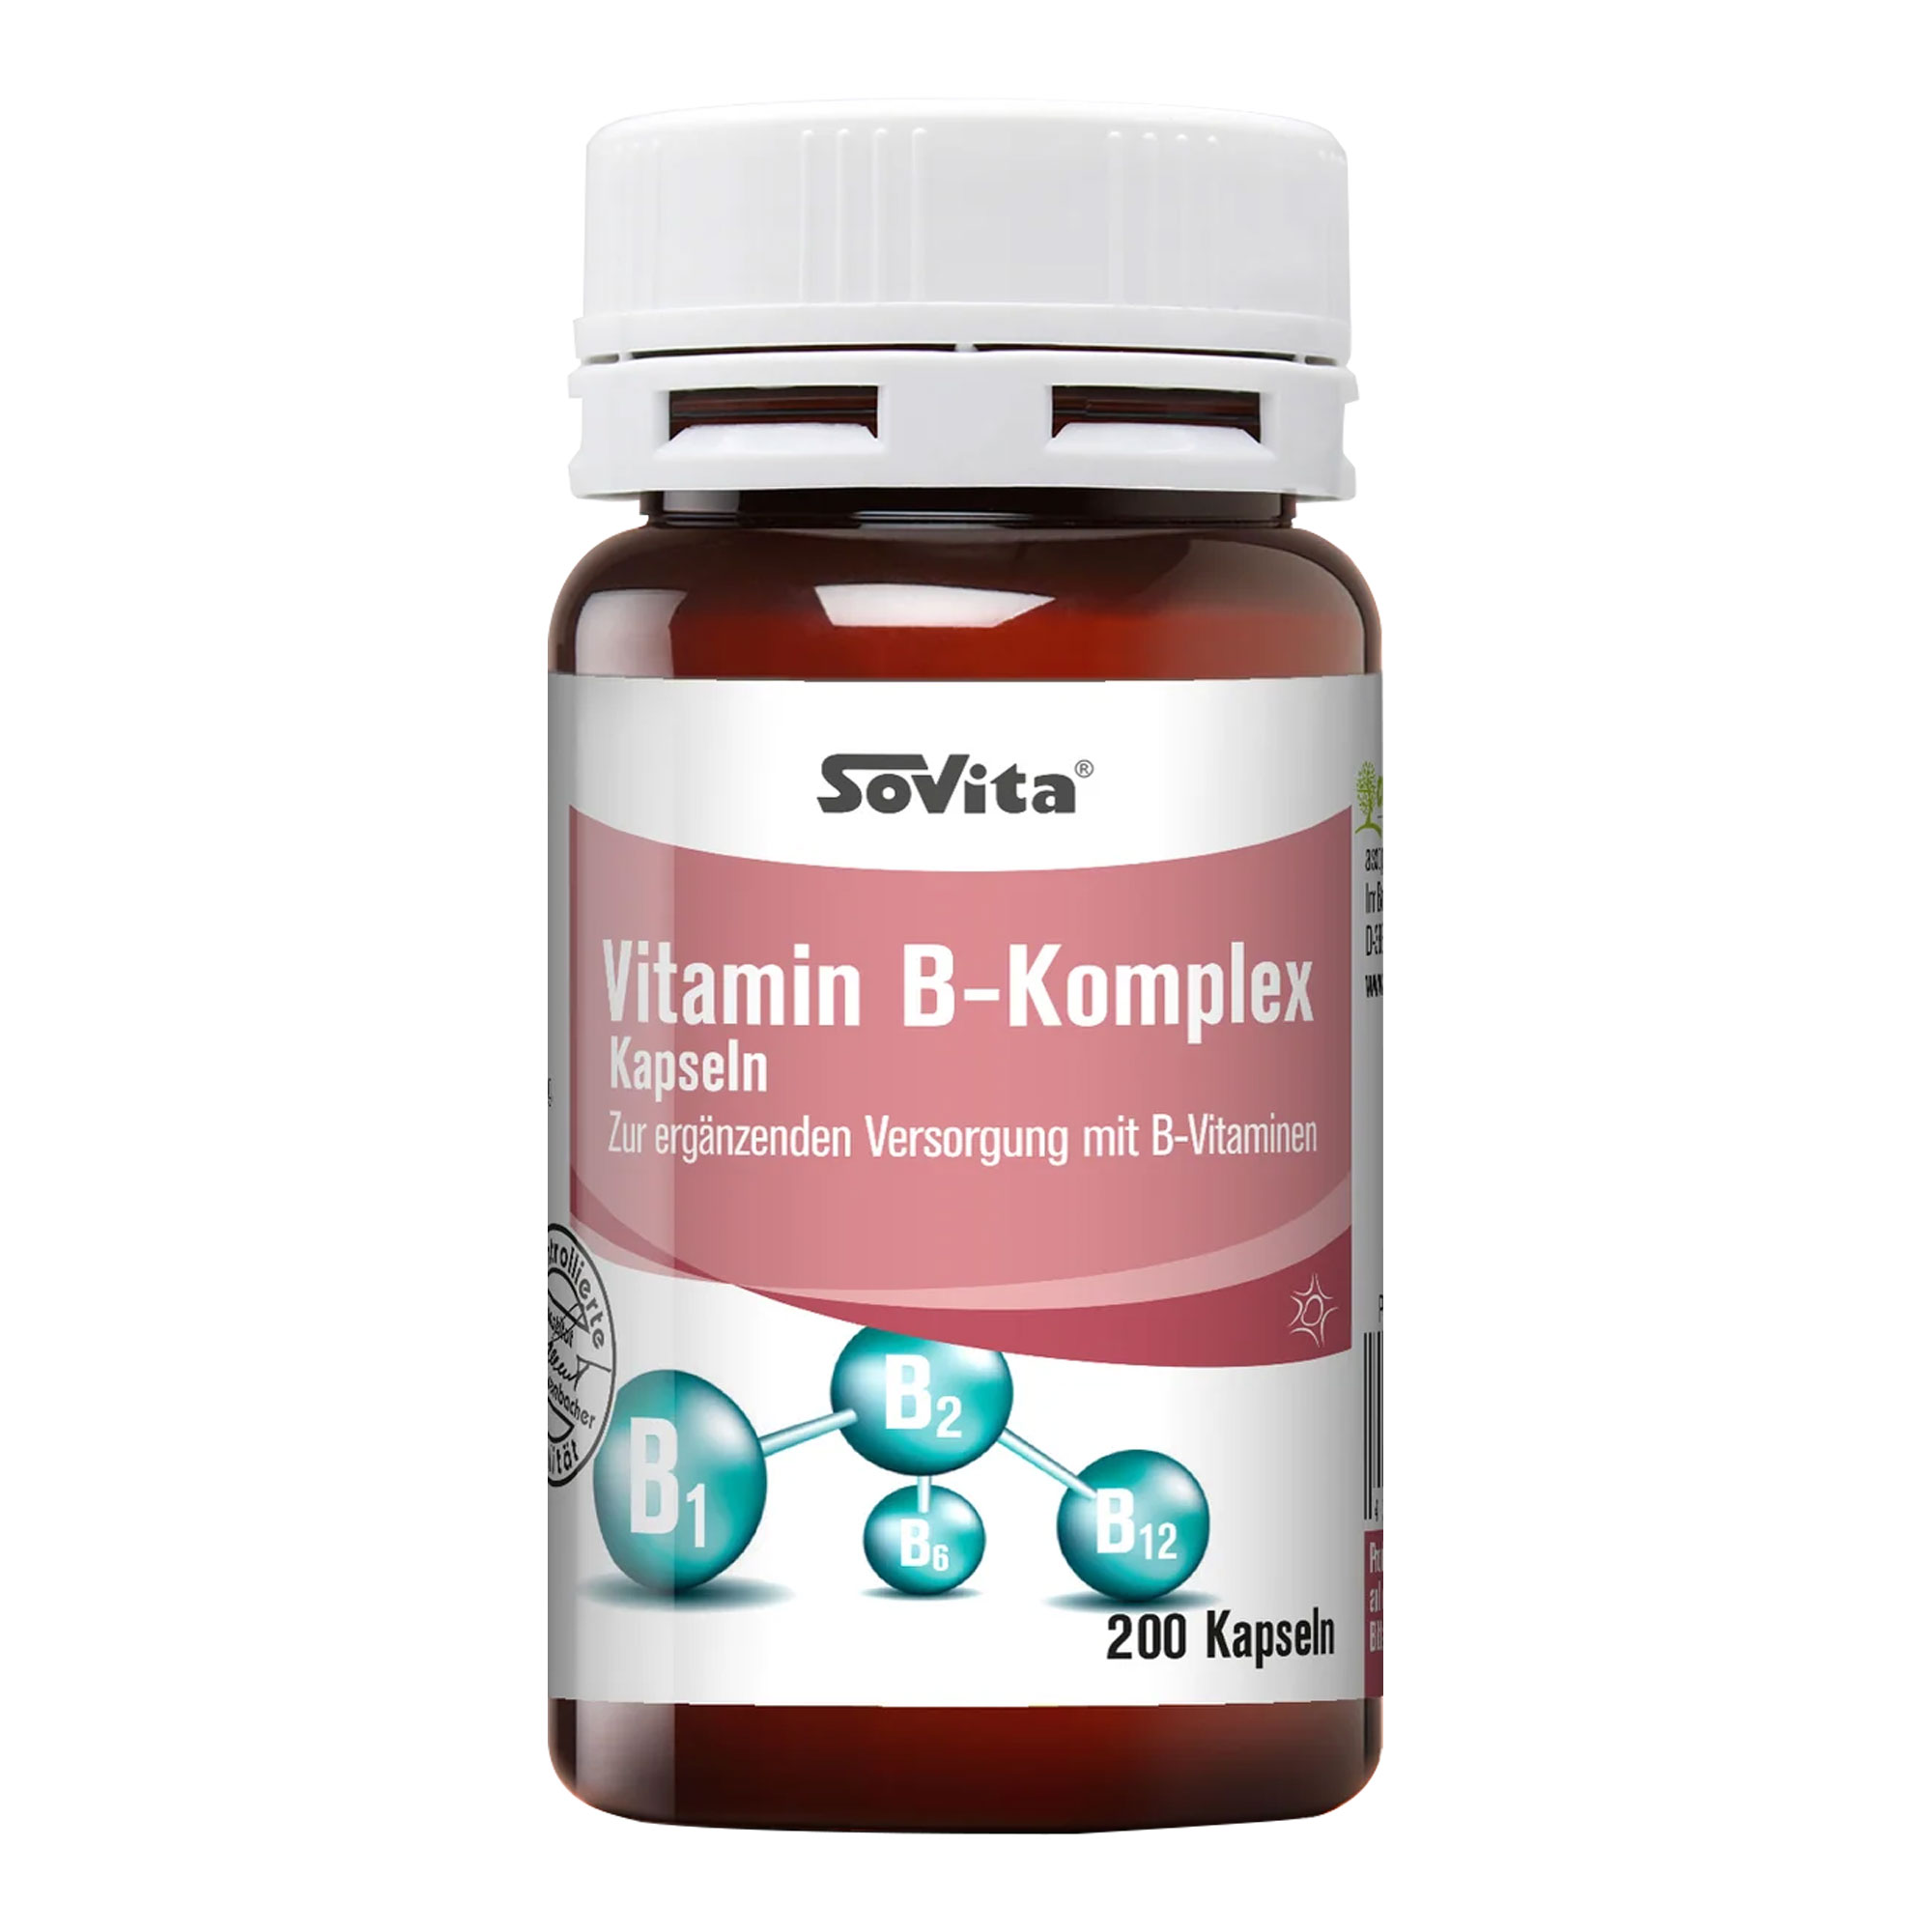 Nahrungsergänzungsmittel zur ergänzenden Versorgung mit B-Vitaminen.